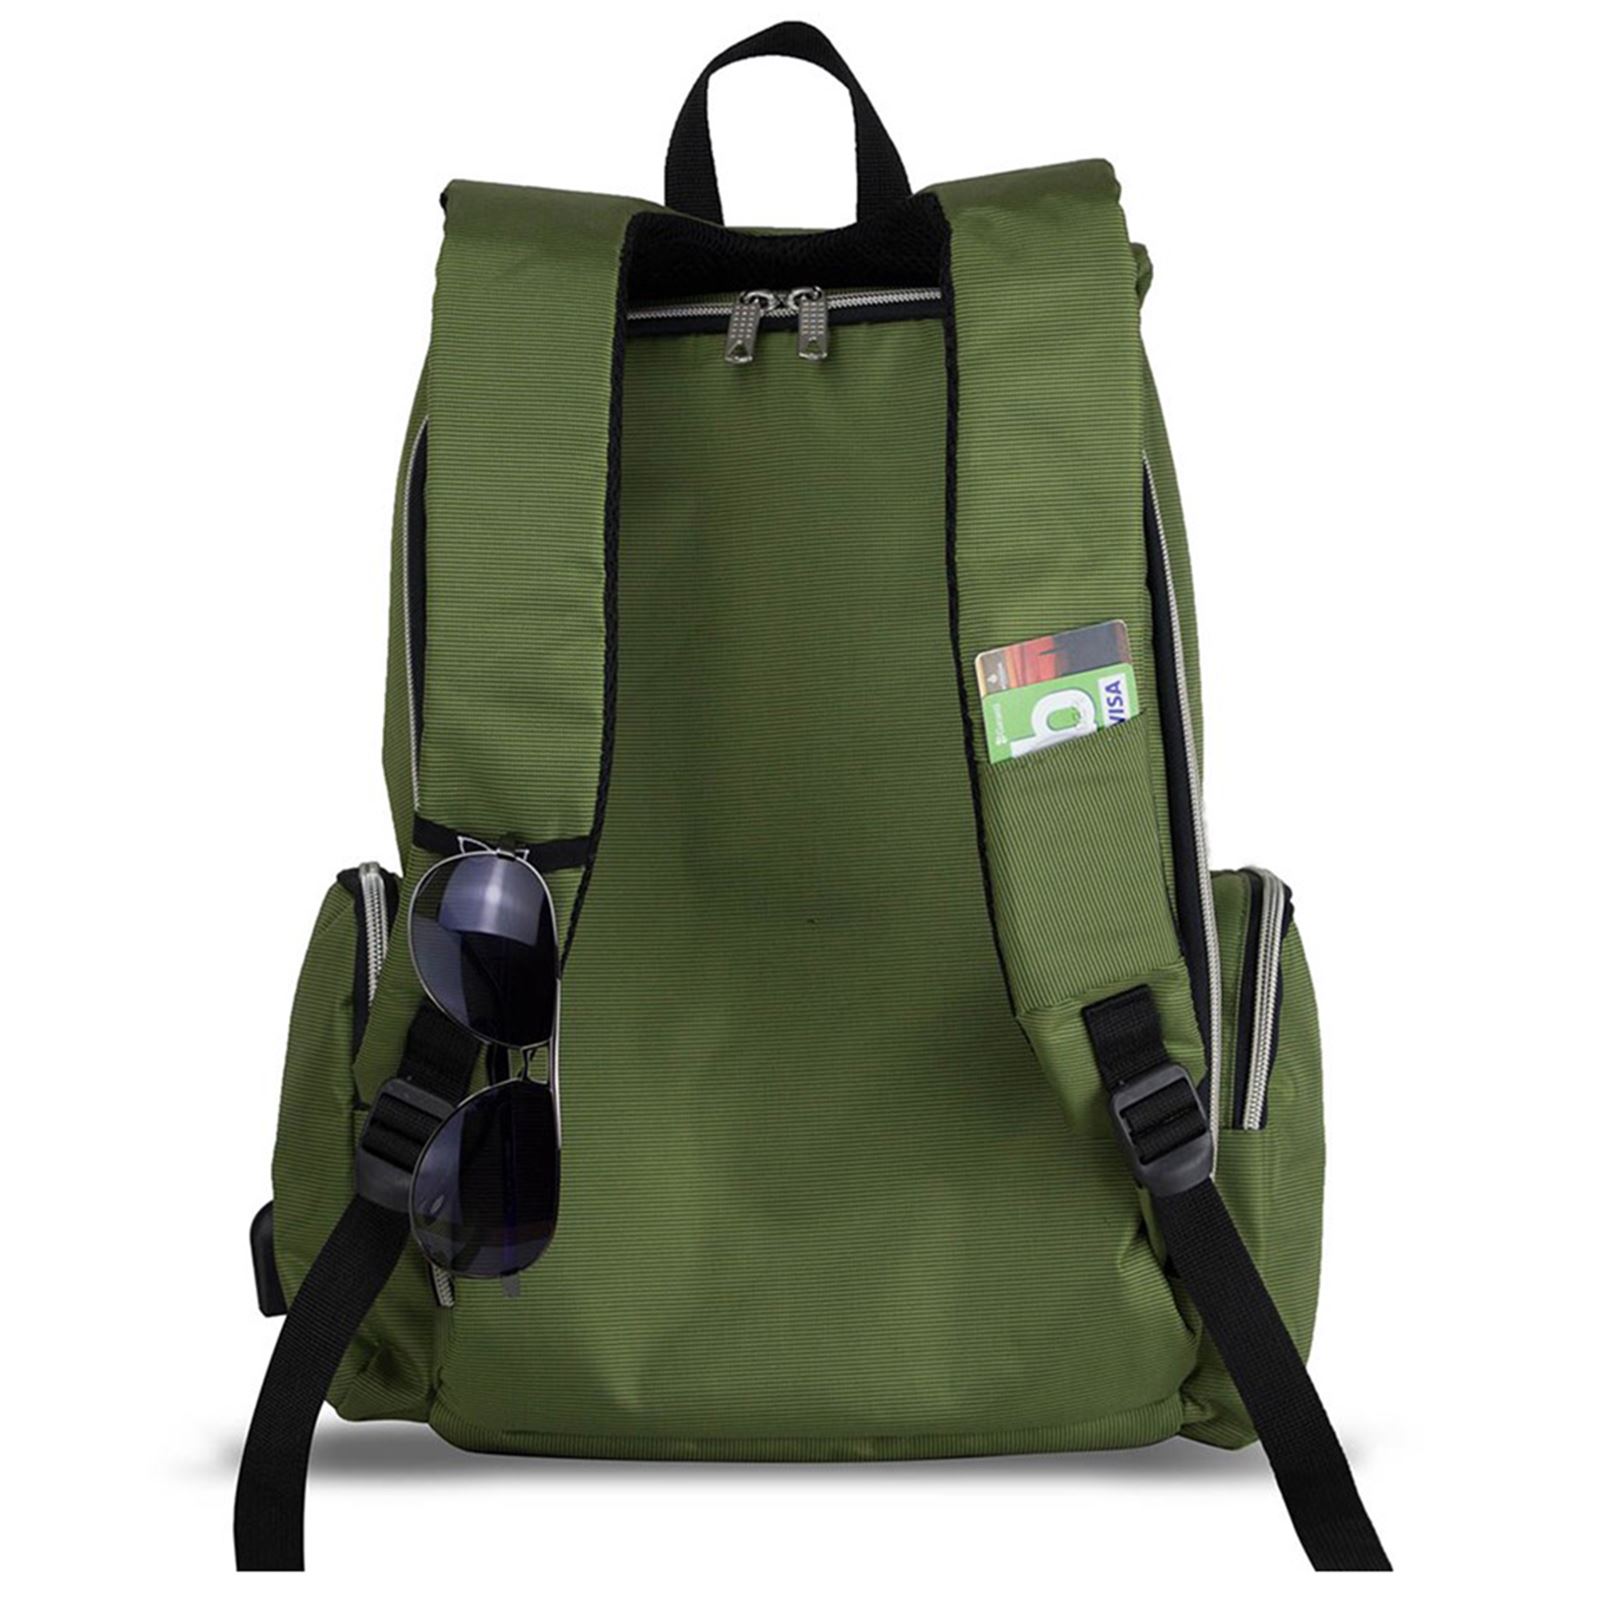 My Valice Smart Bag Mother Star Usb'li Bebek Bakım Çantası Yeşil